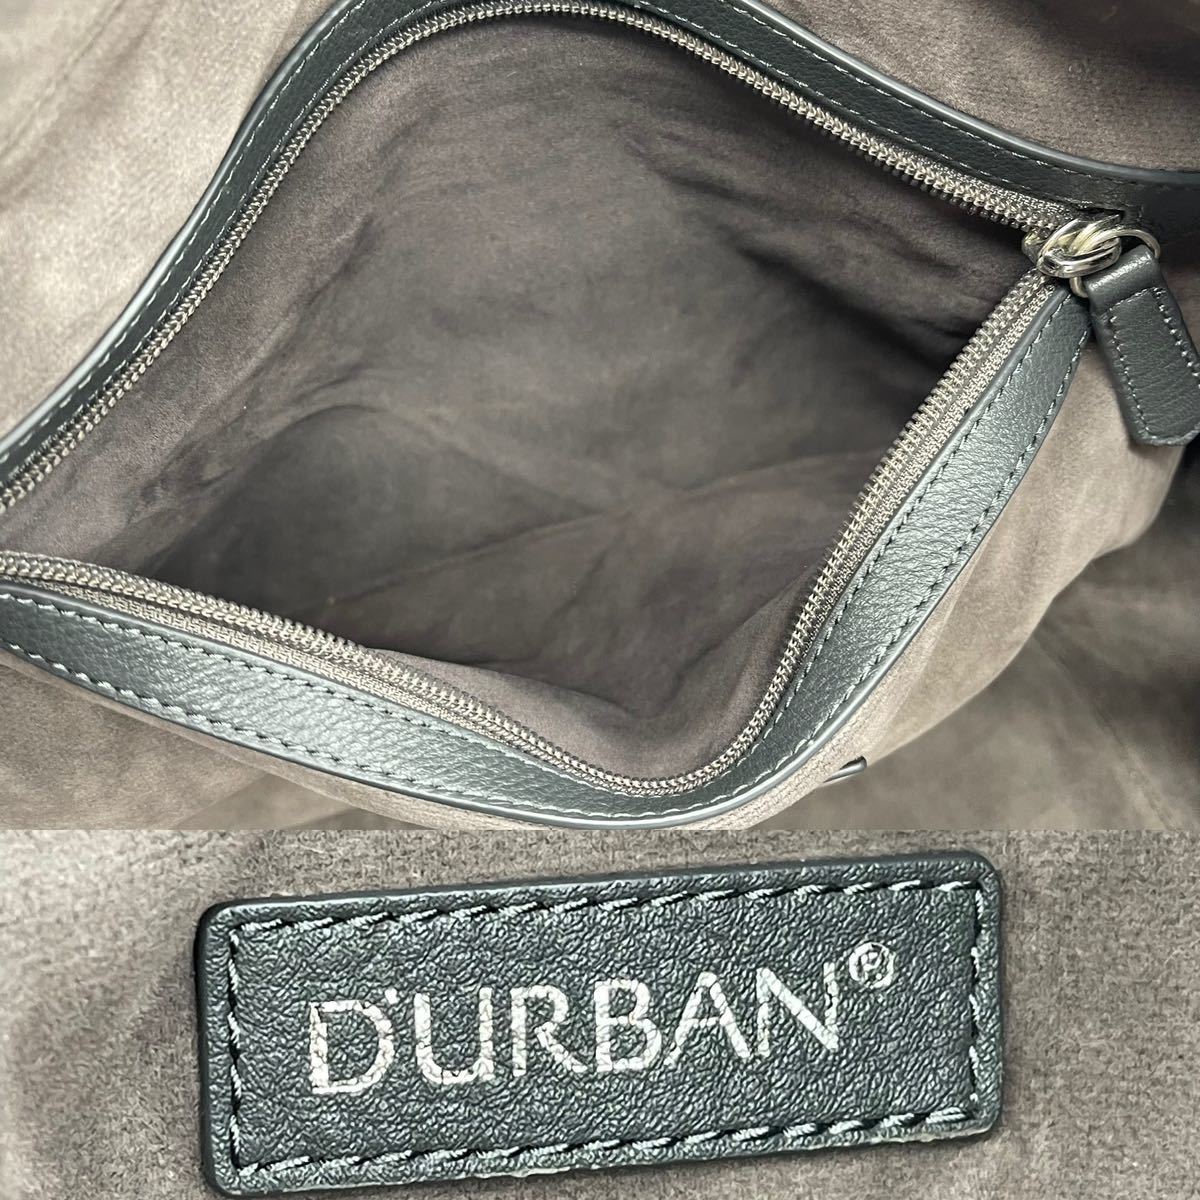 Durban ダーバン ビジネスバッグ 5年保証